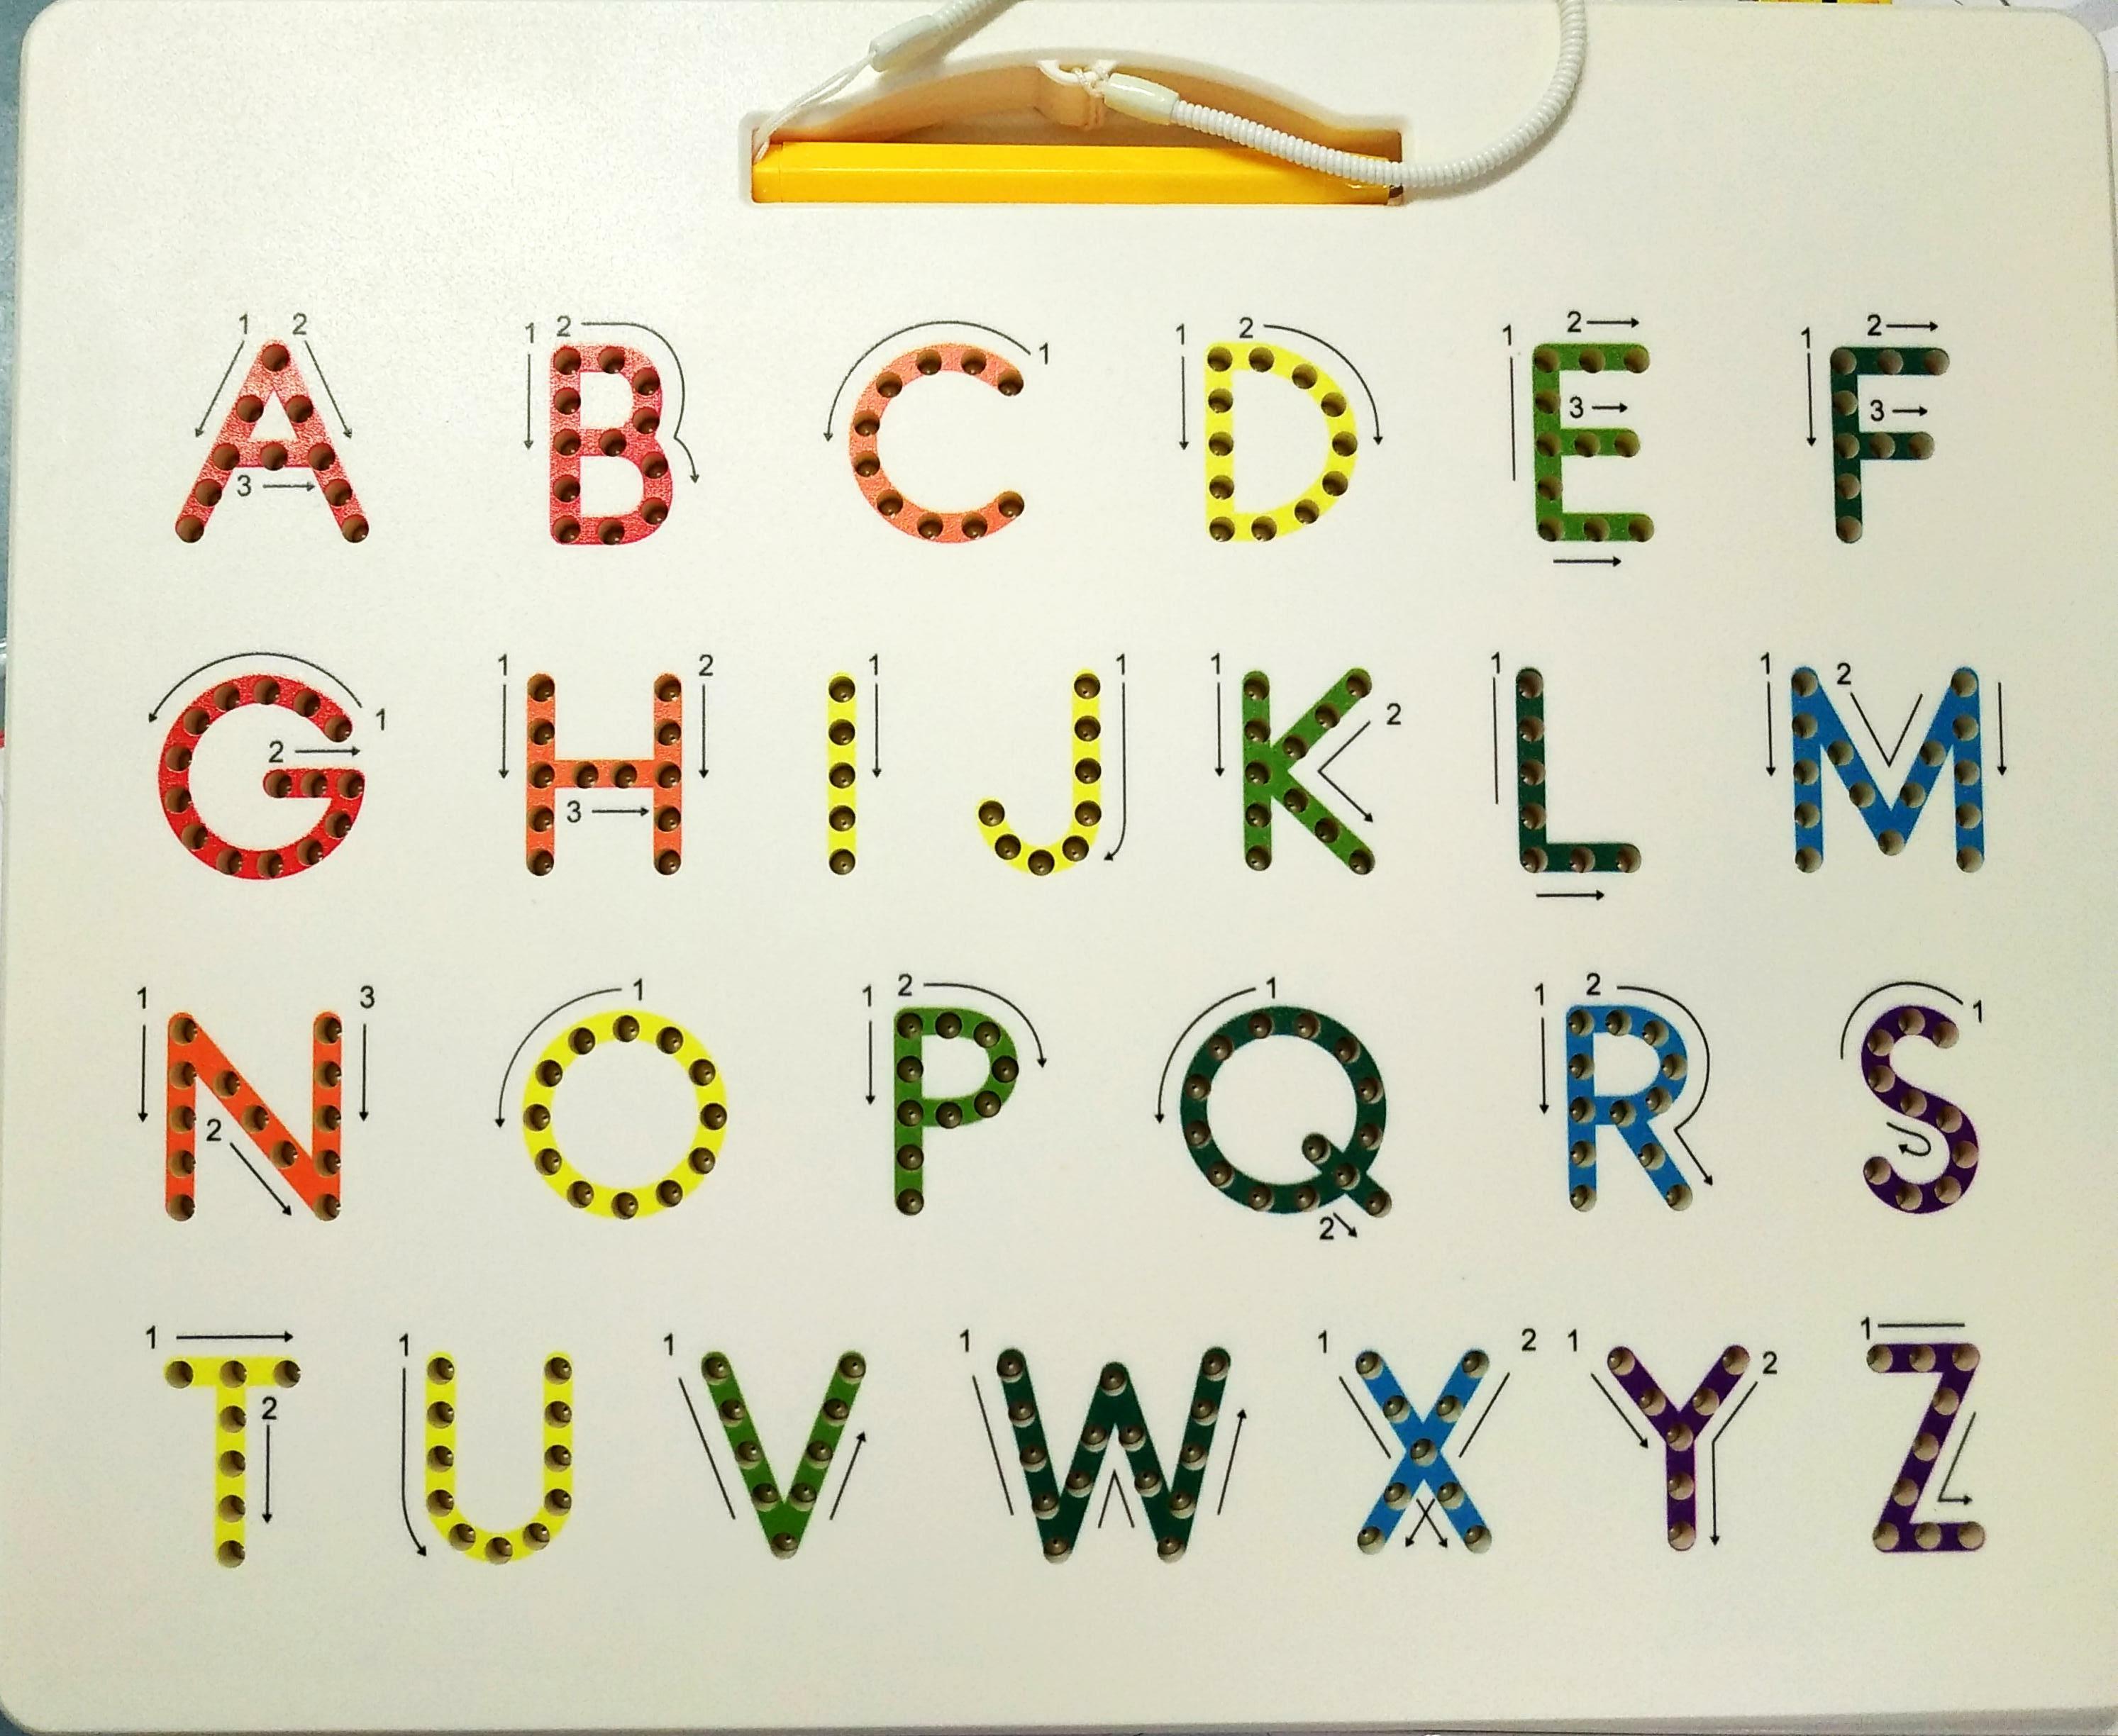 TABLETTE CHIFFRES LETTRES<br>Référence ludothèque : 3867<br>1 à 1 joueur(s) <br>Cette tablette magnétique permet d'apprendre à écrire les lettres et les chiffres.